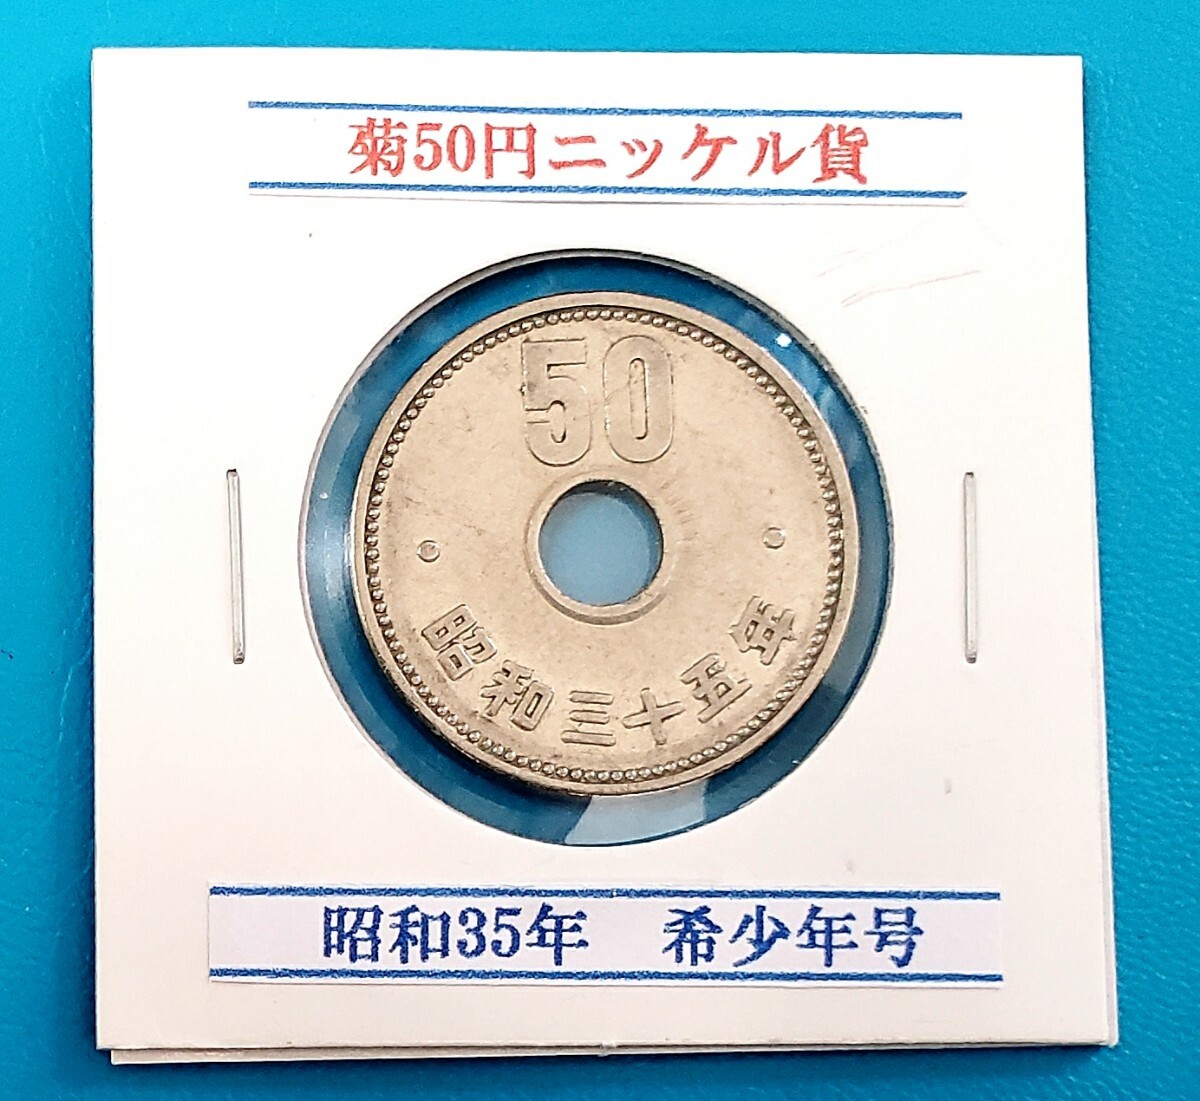 50円ニッケル貨 昭和35年 希少年号    控え記号:Z86  の画像1